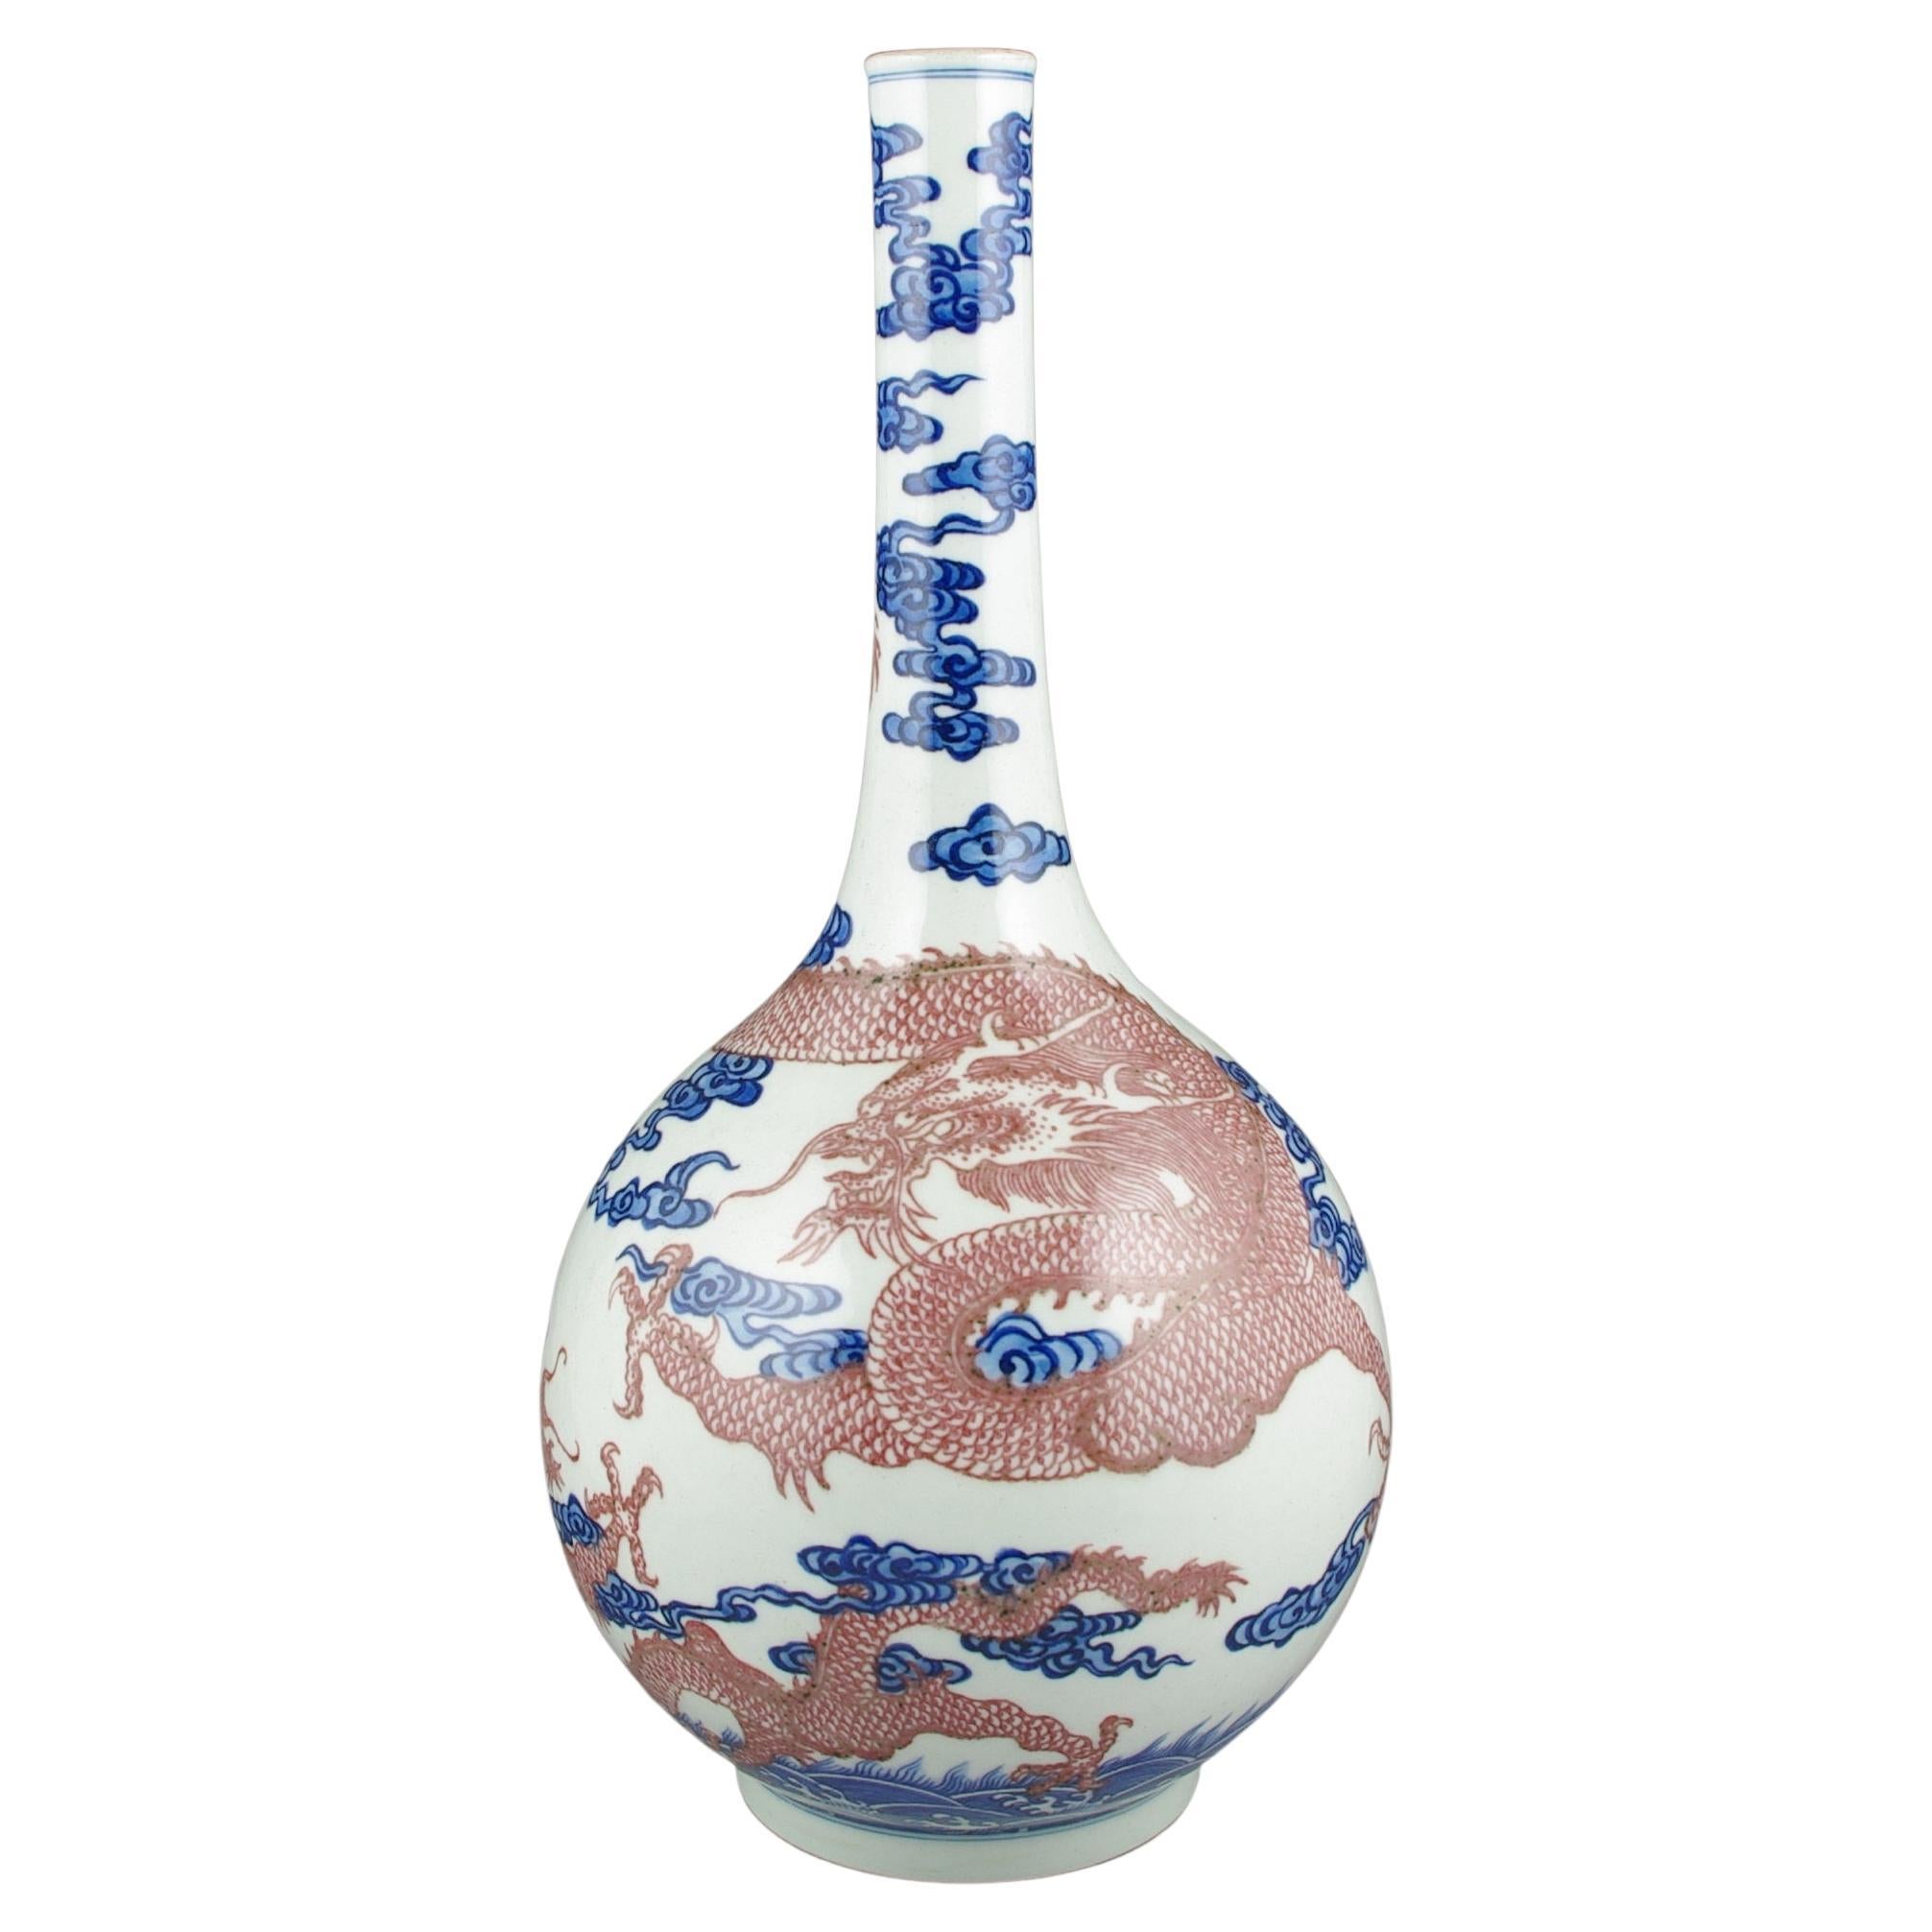 Chinesische Porzellanvase mit Unterglasur in Blau und Weiß mit 2 kupferroten Drachen in Flasche, 20c